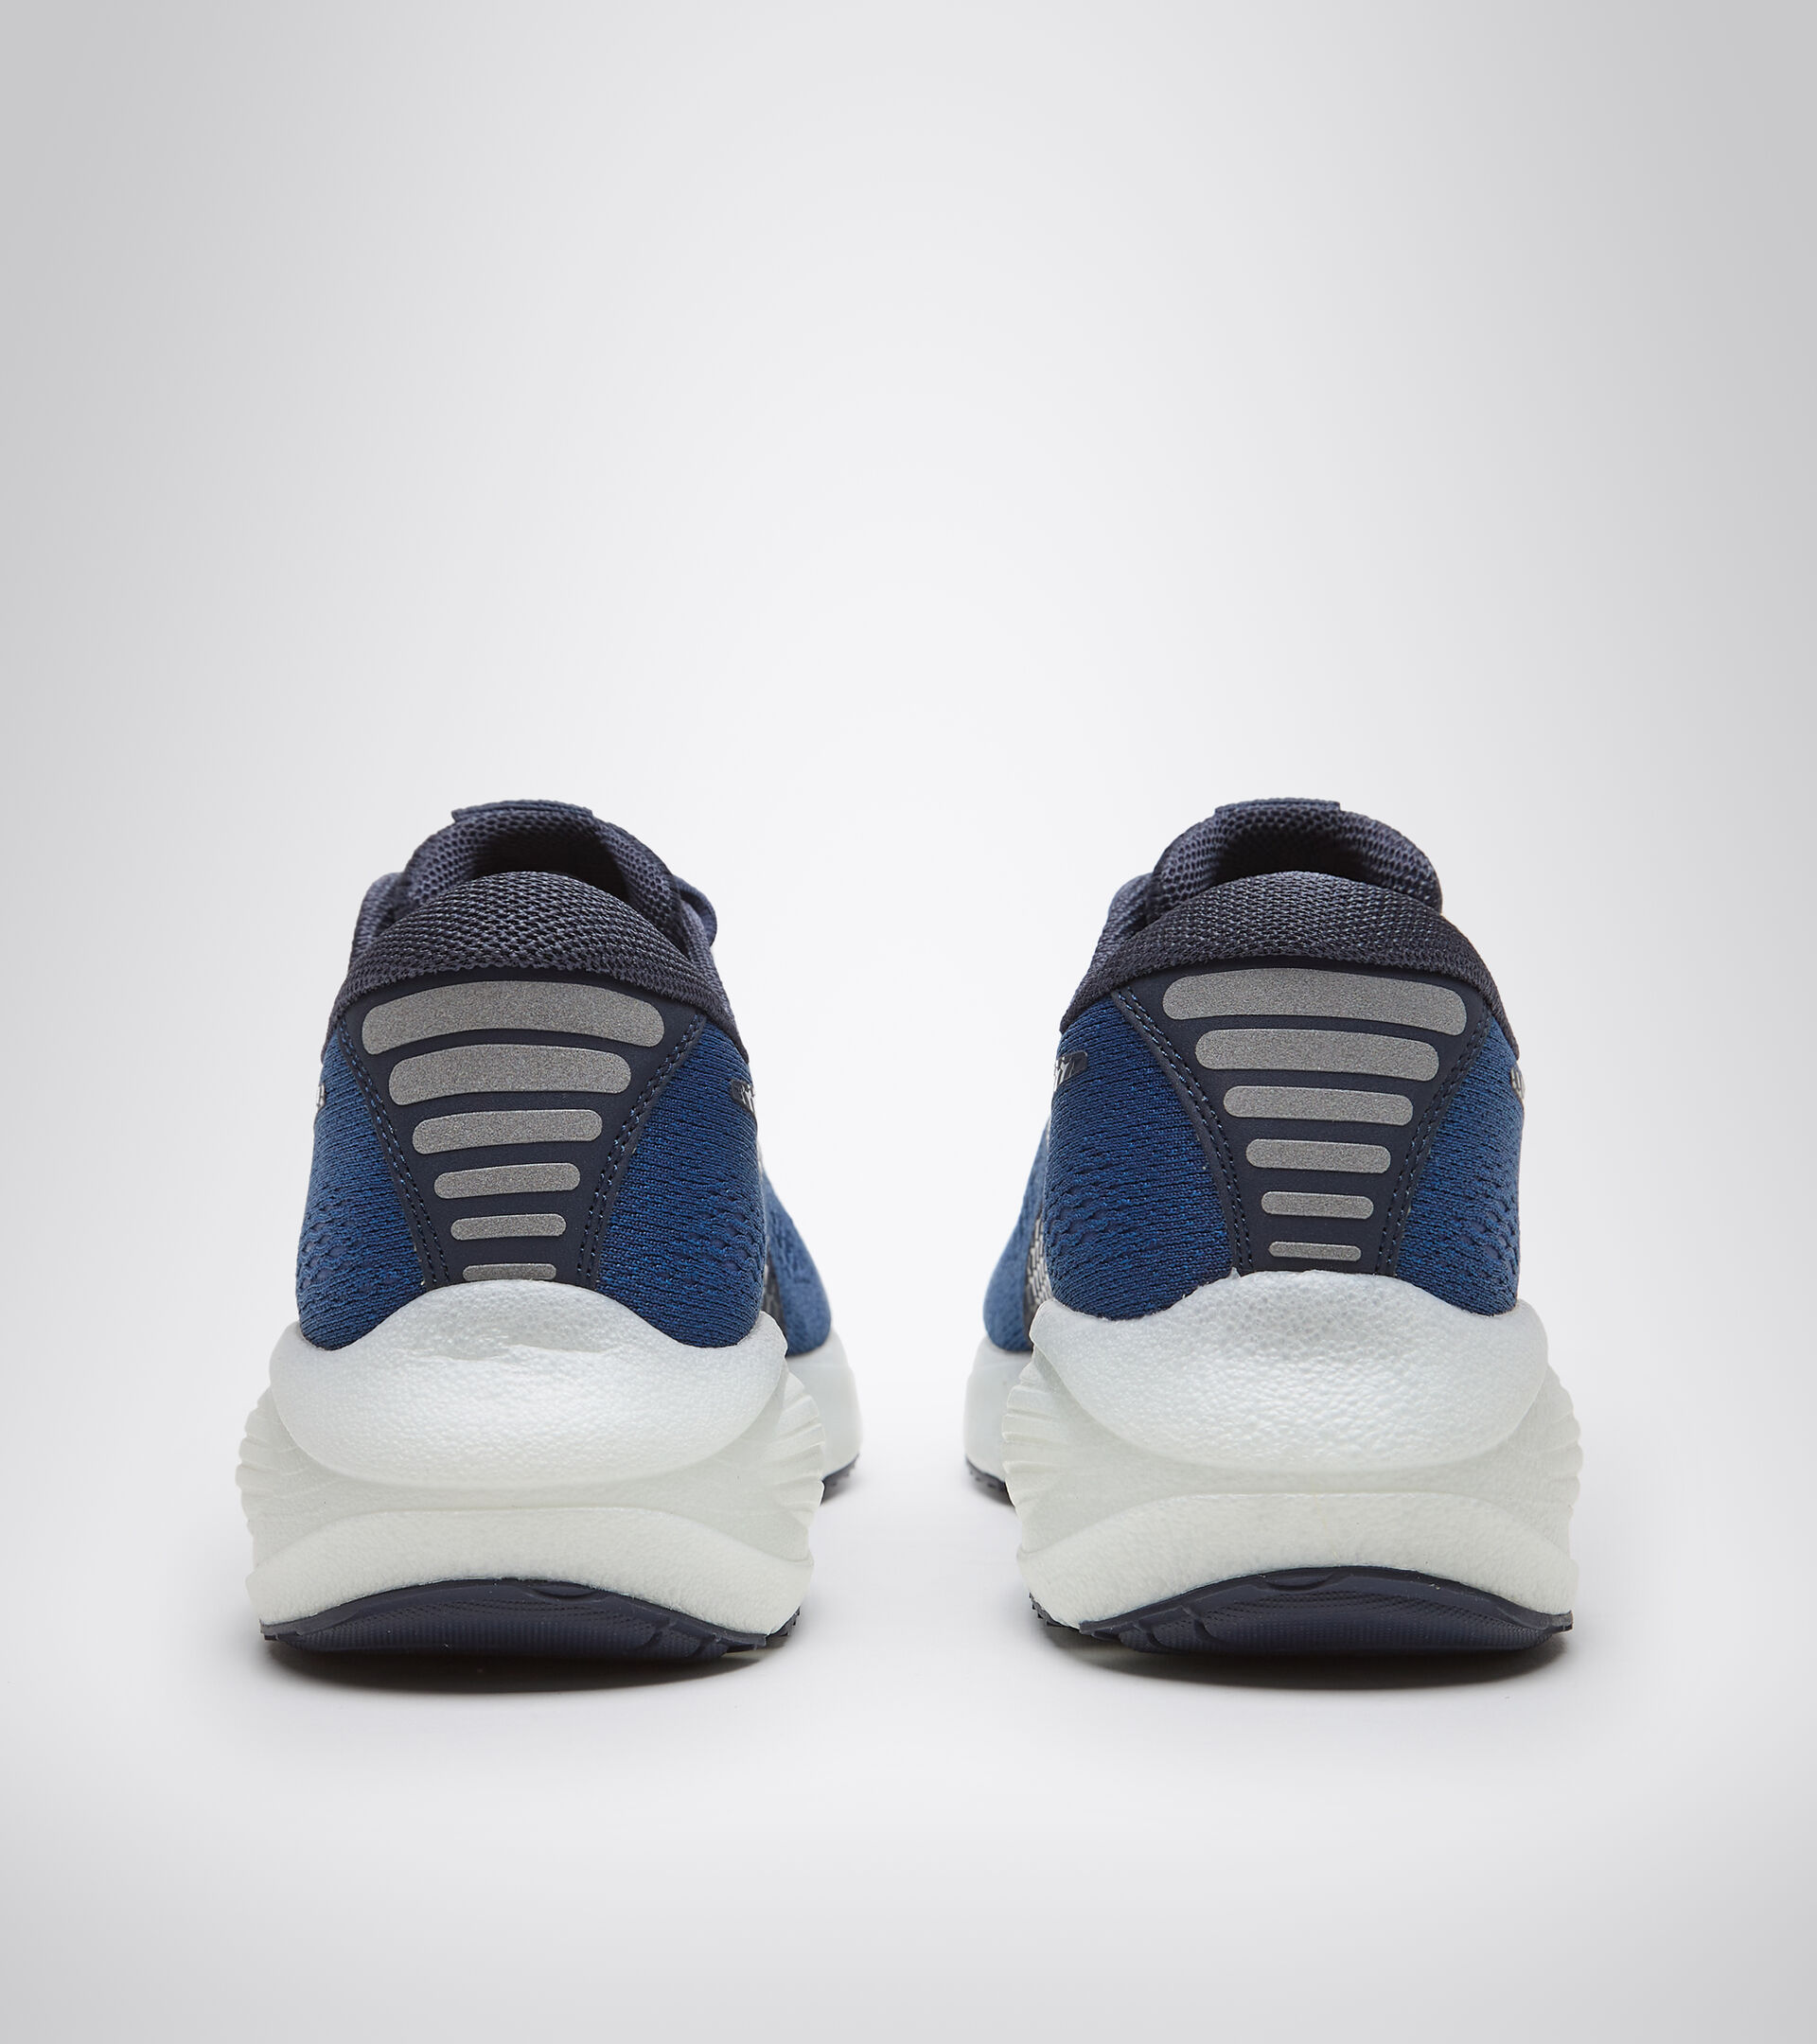 Running shoes - Men FRECCIA BLUE CORSAIR/WHITE - Diadora